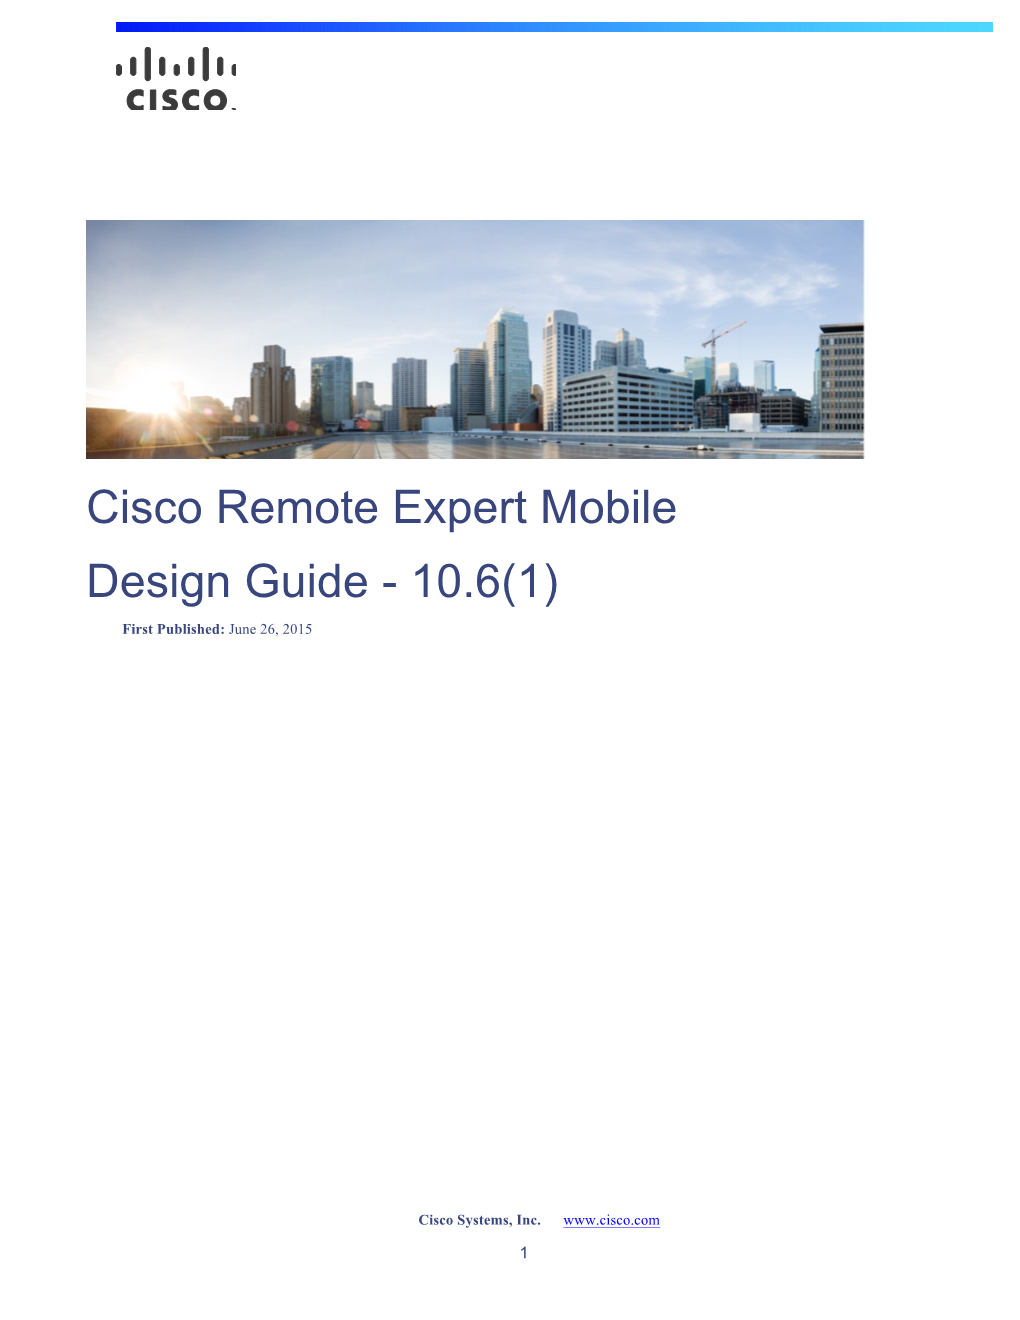 Cisco Remote Expert Mobile Design Guide Release 10.6(1)